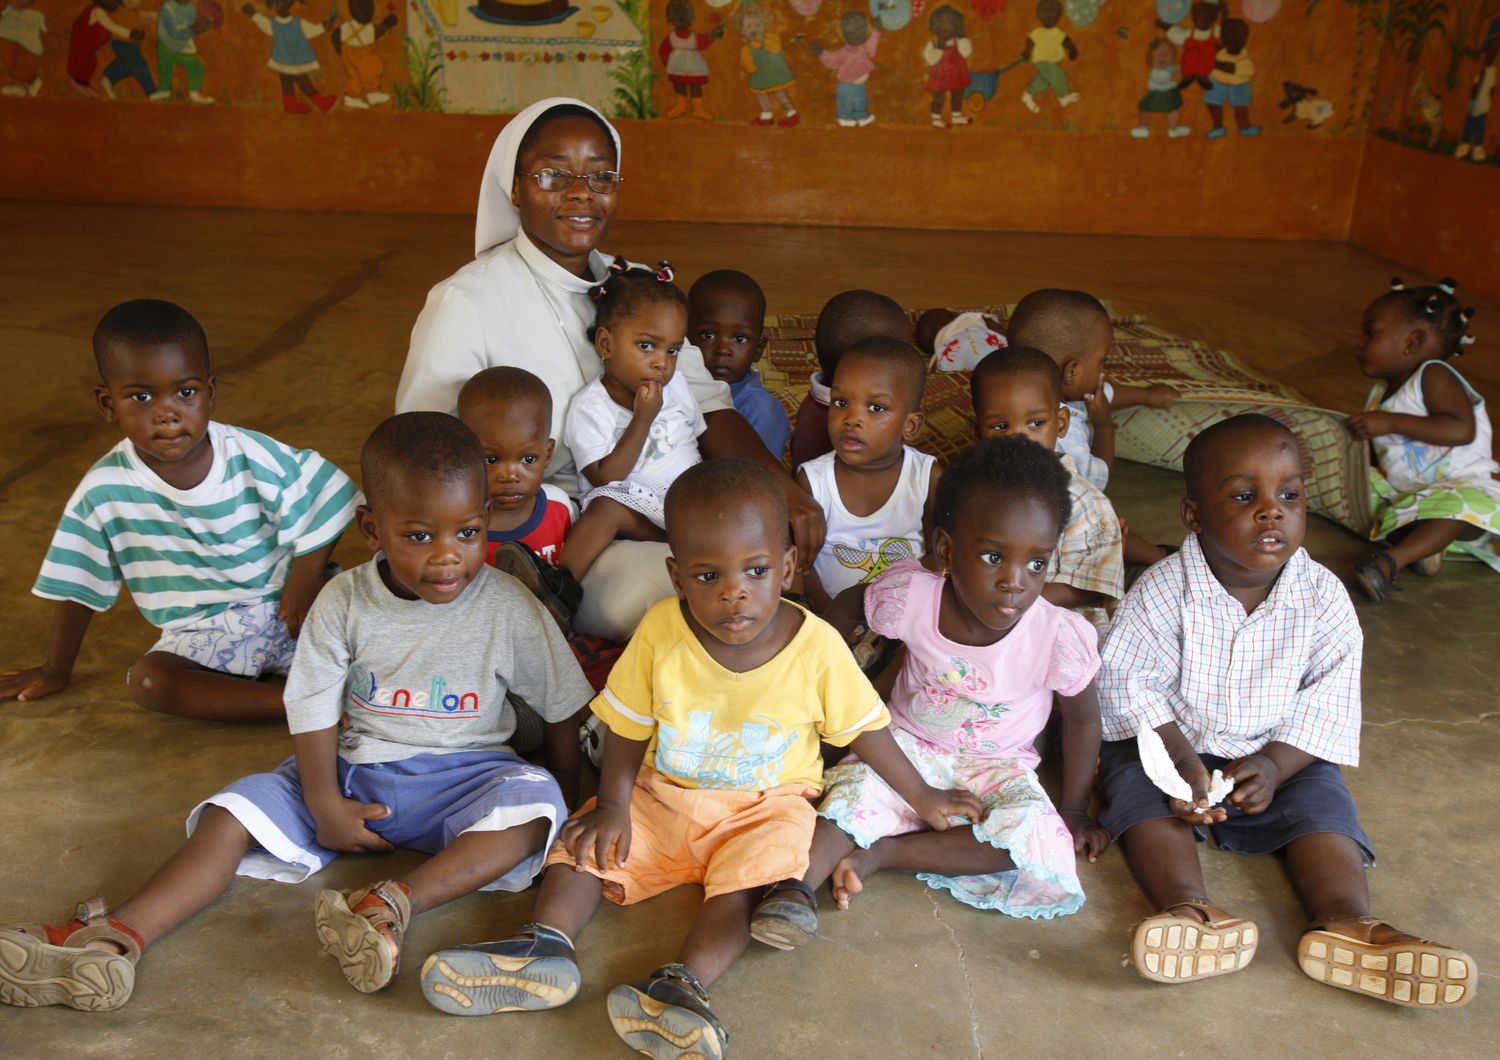 &nbsp;bambini africani orfani ebola villaggio (afp)